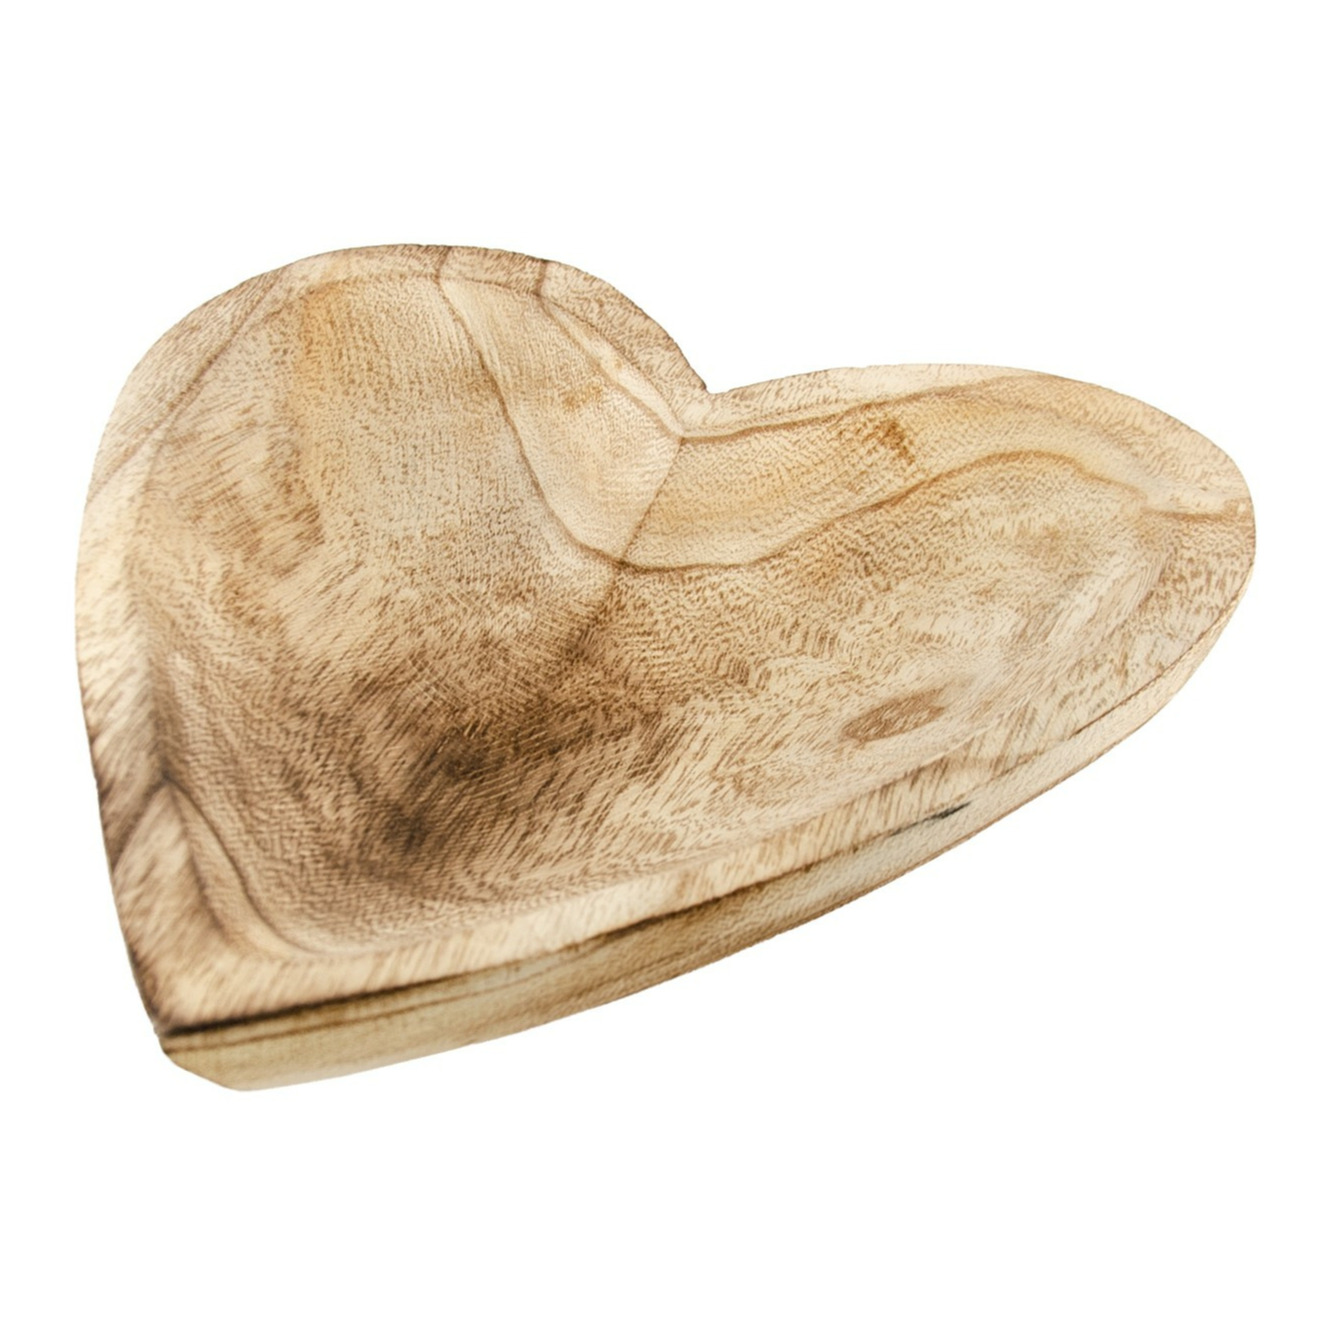 Serveerplank-dienblad hartvorm hout beige B25 x H4 cm